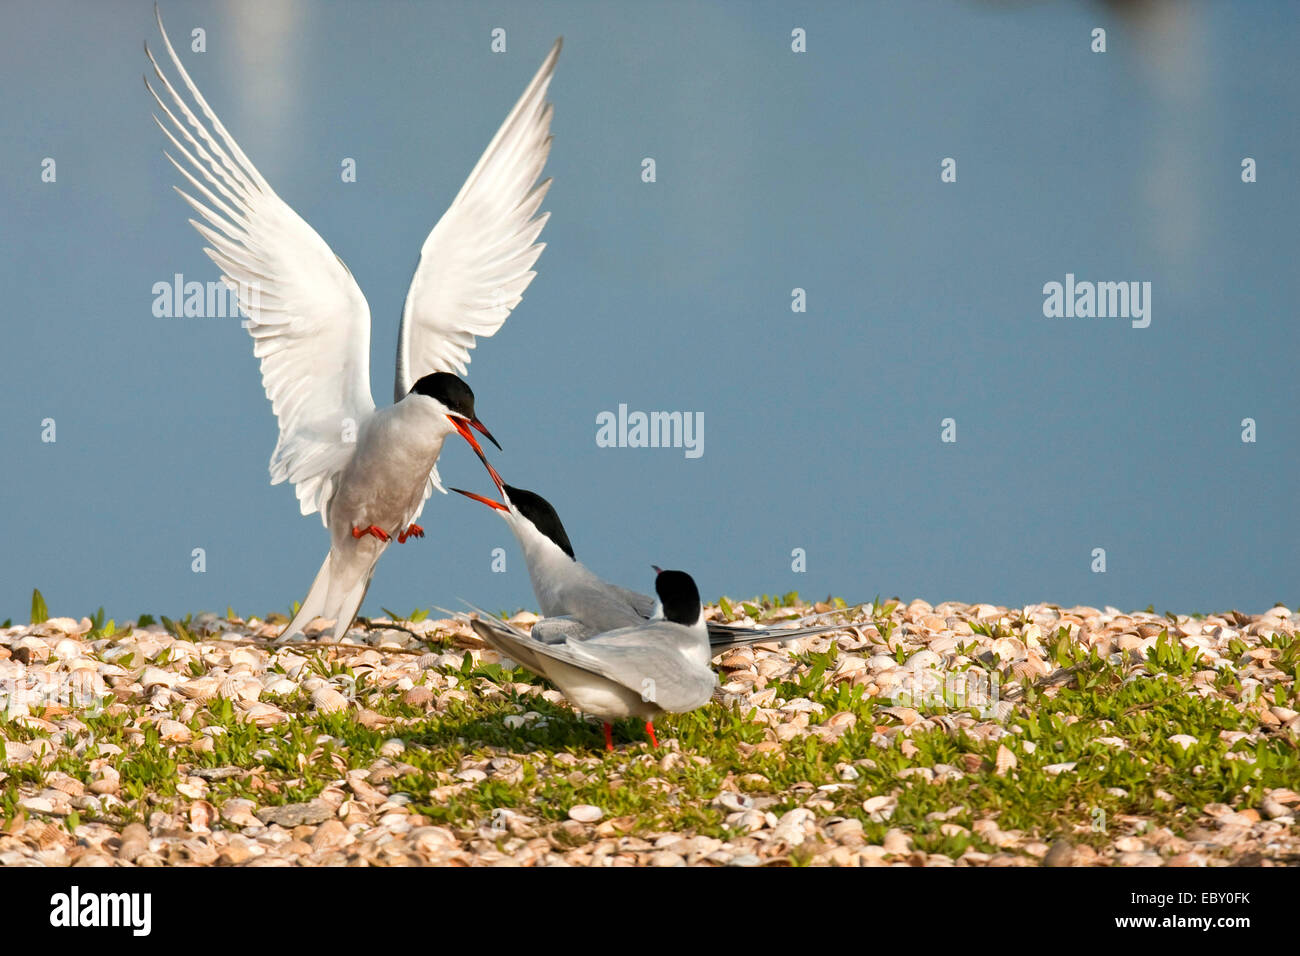 La sterne pierregarin (Sterna hirundo), trois oiseaux s'affrontant à un rivage recouvert d'herbe et d'innombrables coquillages, Pays-Bas, Texel Banque D'Images